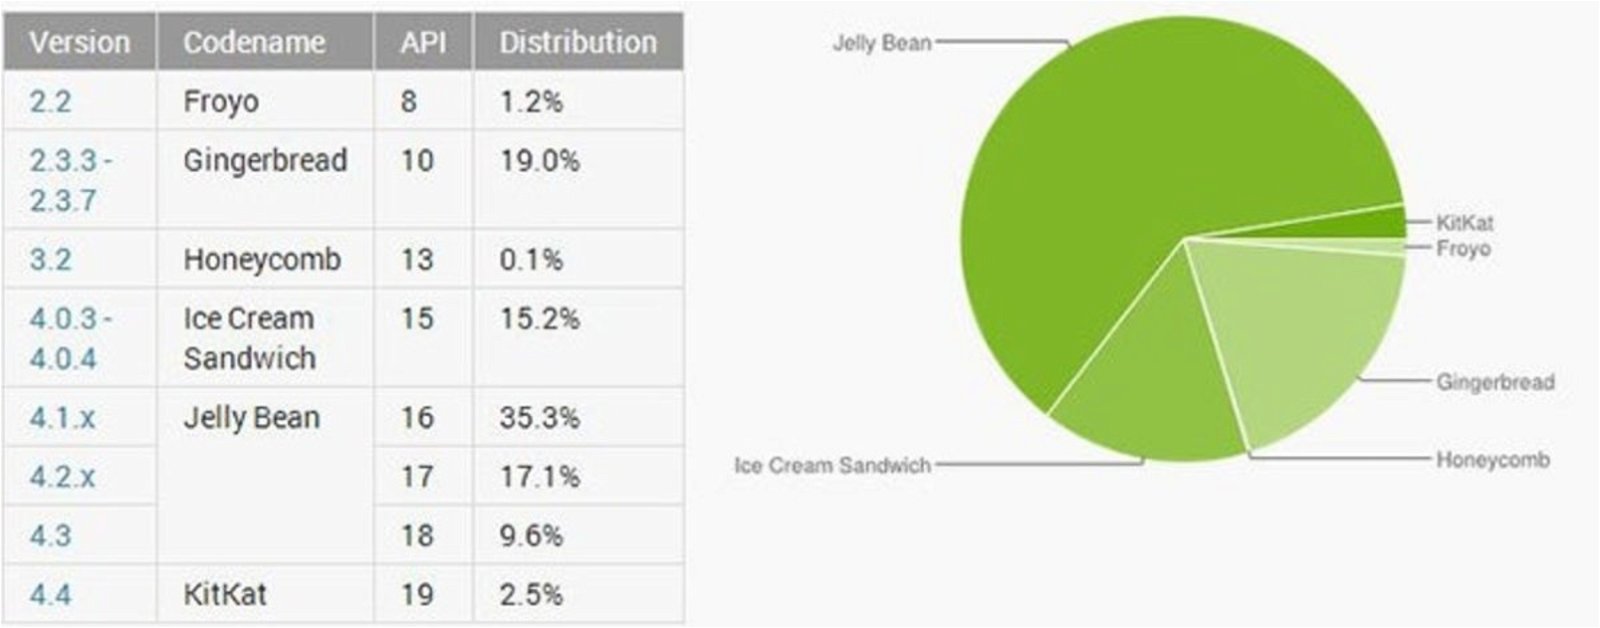 Tabla y gráfico de la distribución de Android entre febrero y marzo